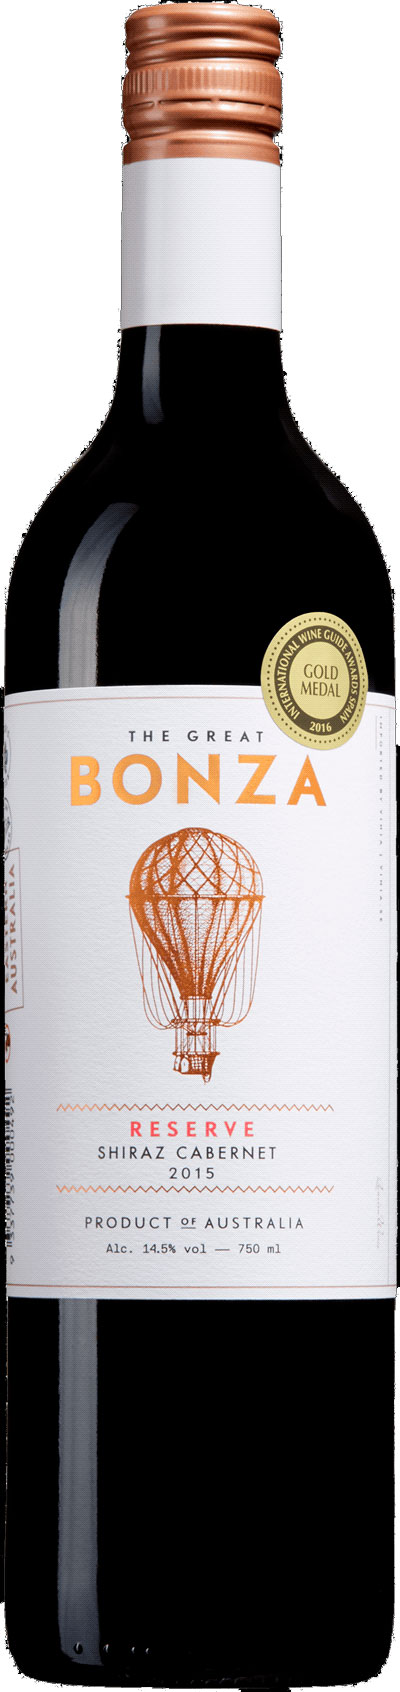 The Great Bonza Reserve Shiraz Cabernet ( Quarisa Wines ) 2015